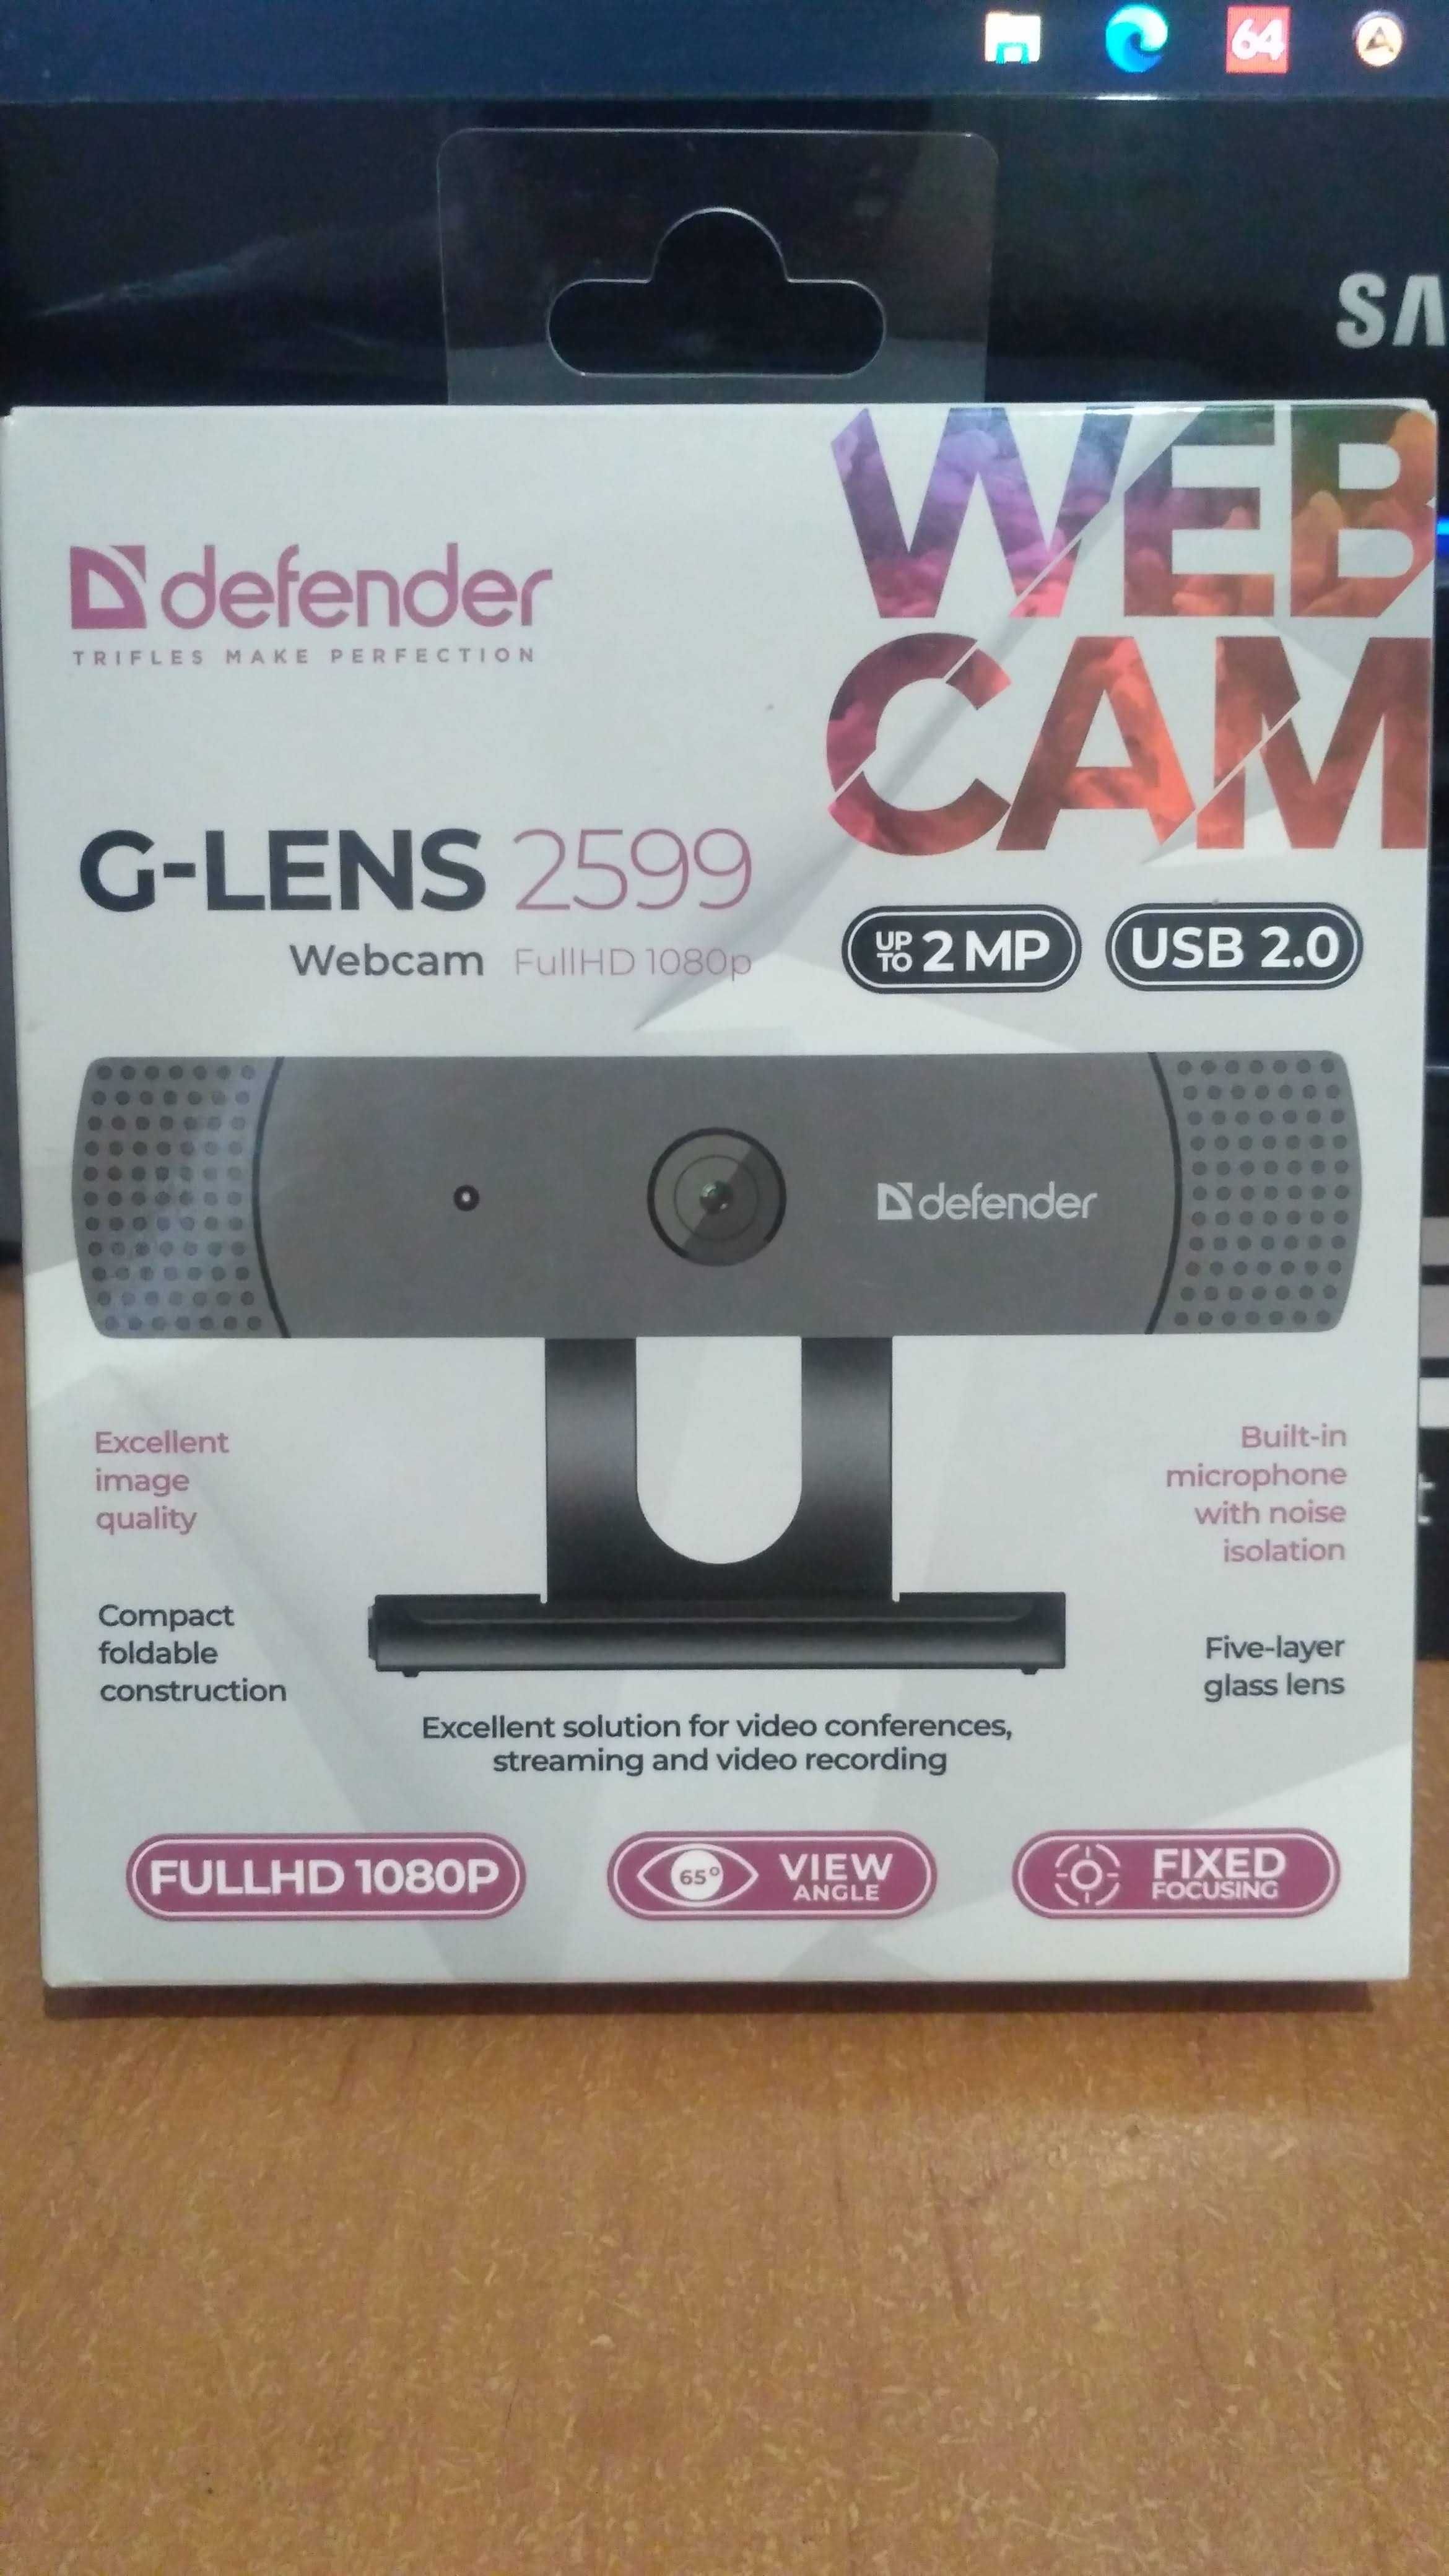 Продам. Веб камера - Defender G-lens 2599 Full HD 1080p